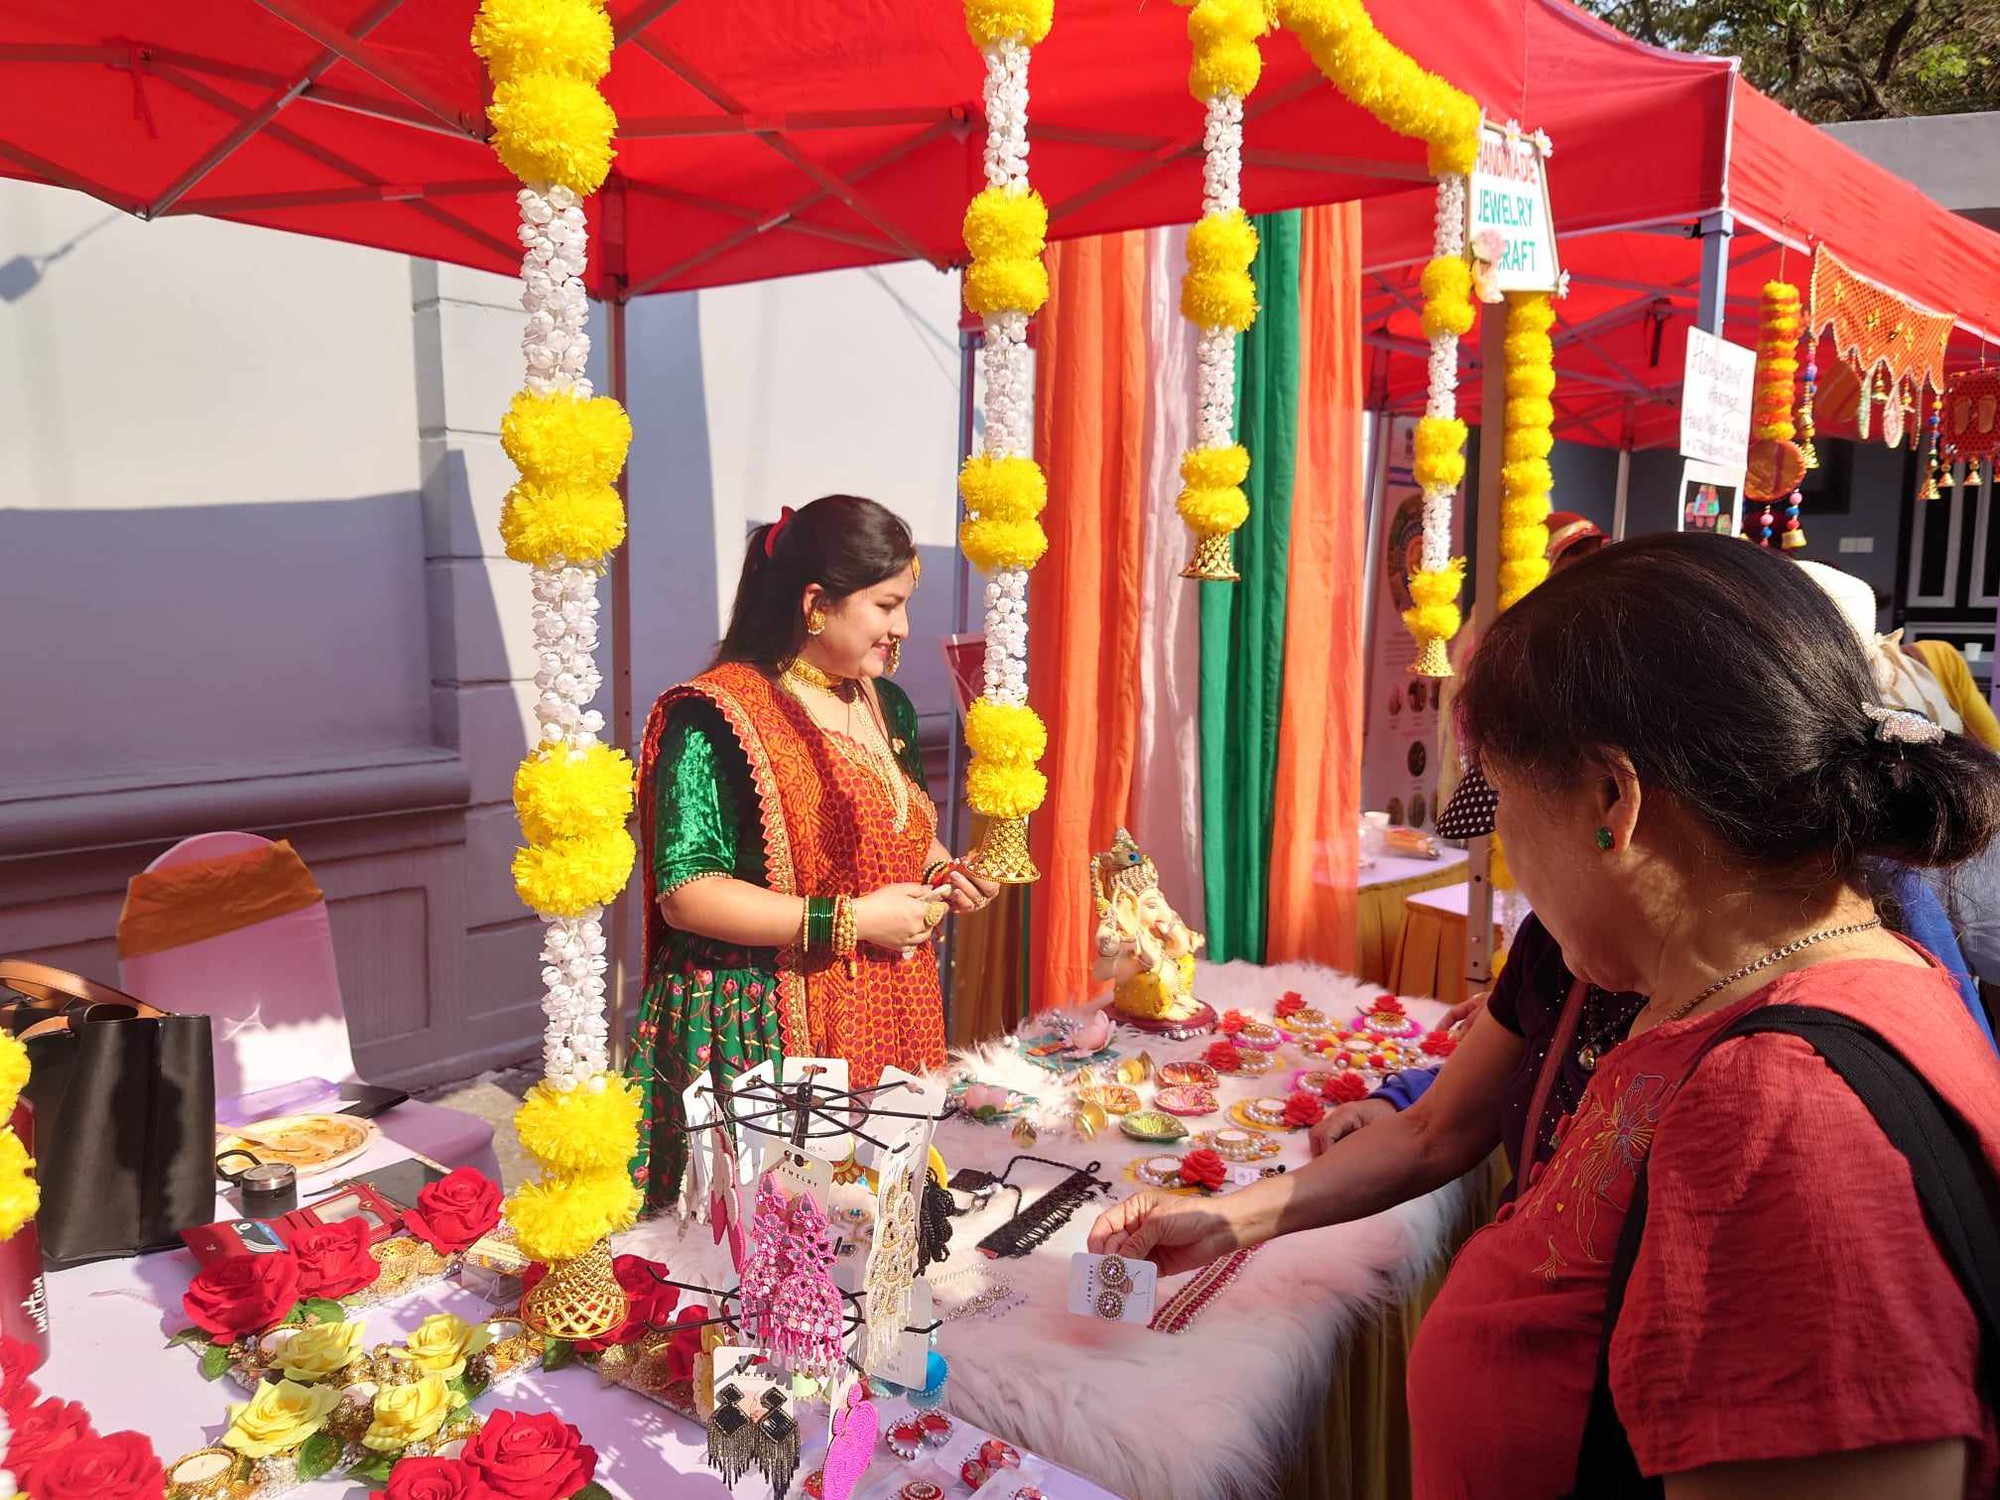 Rực rỡ sắc màu văn hóa Ấn Độ tại Hà Nội - Ảnh 1.